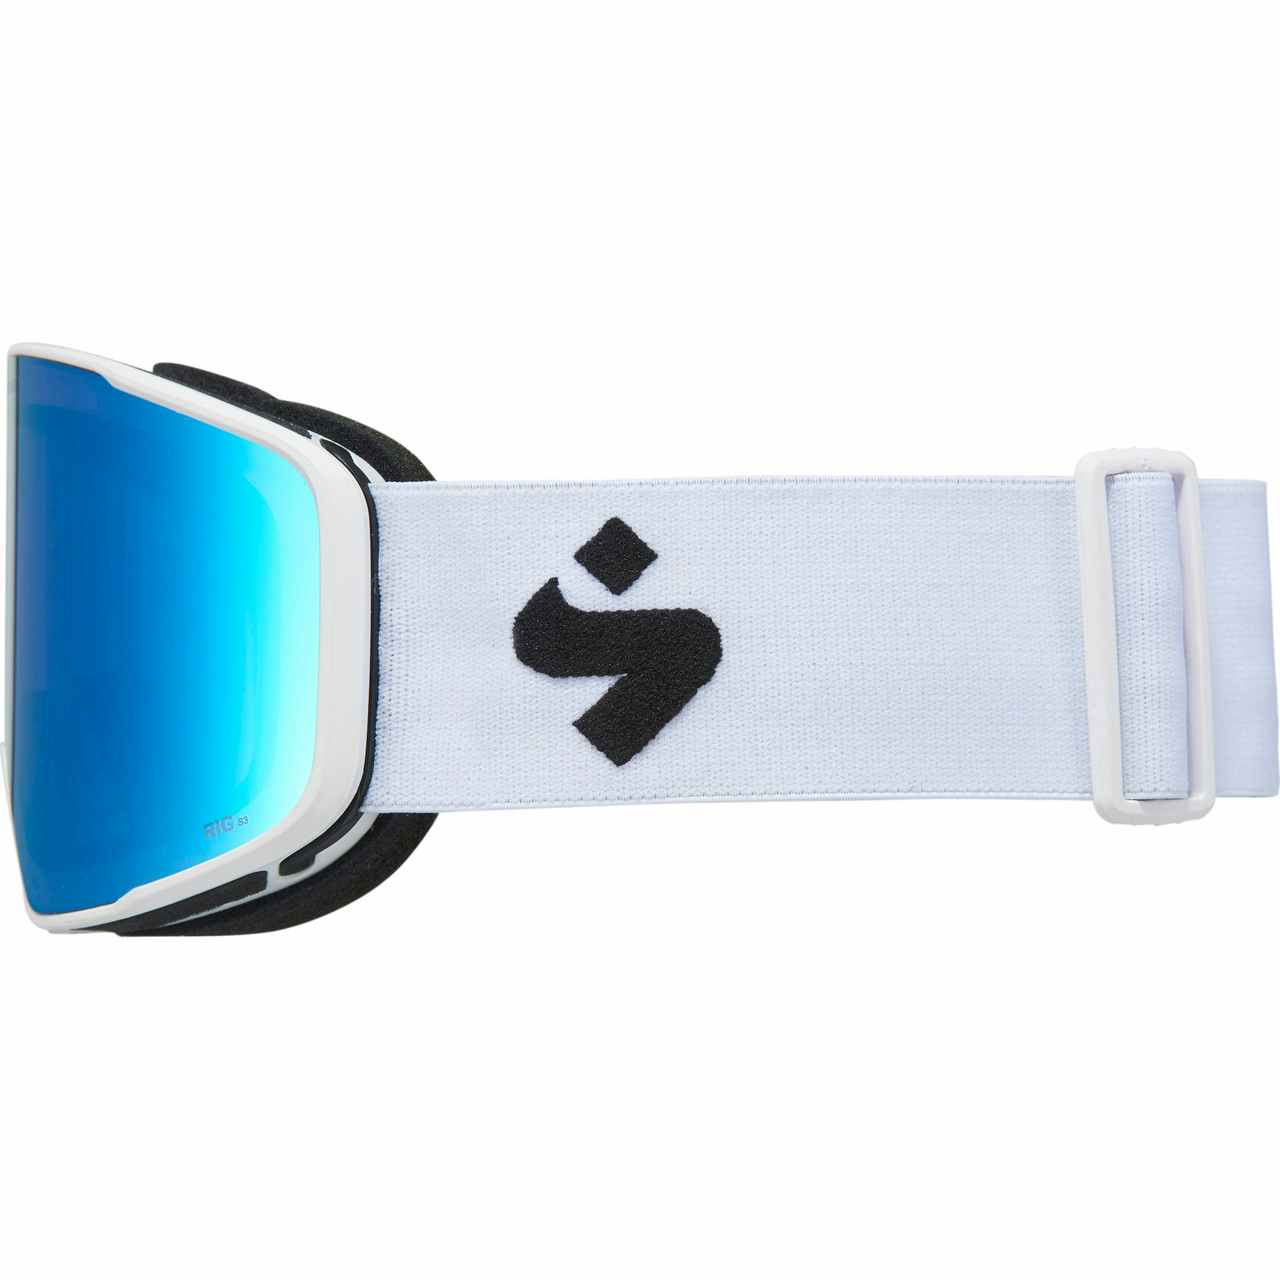 Boondock RIG Reflect Bonus Lens Inc Goggles RIG Aquamarine+RIG L Amet